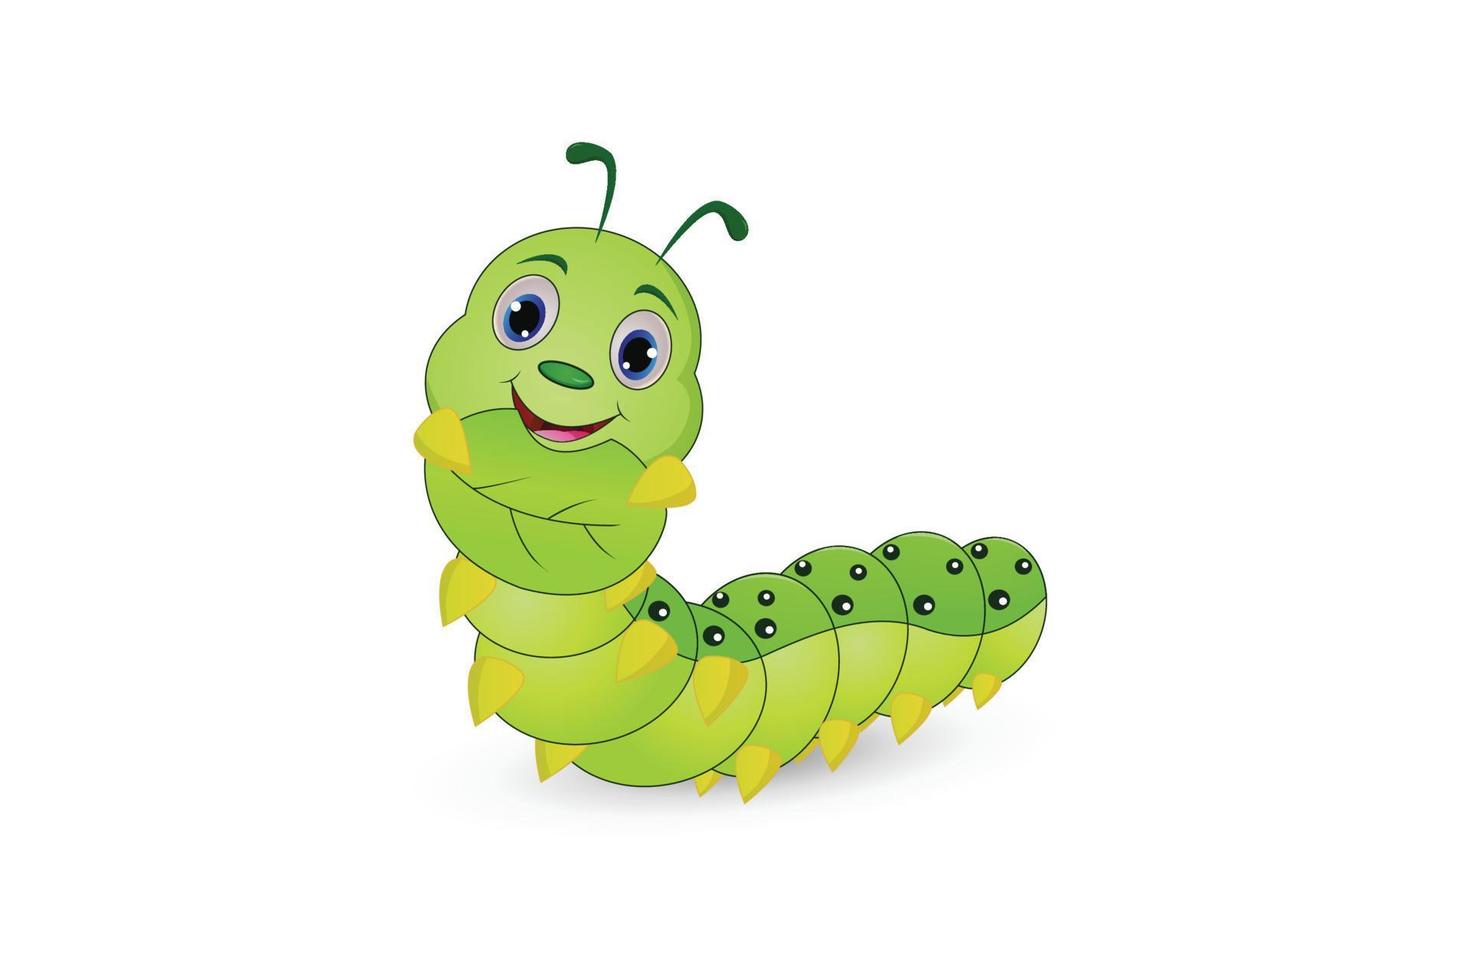 Cute caterpillar illustration vector